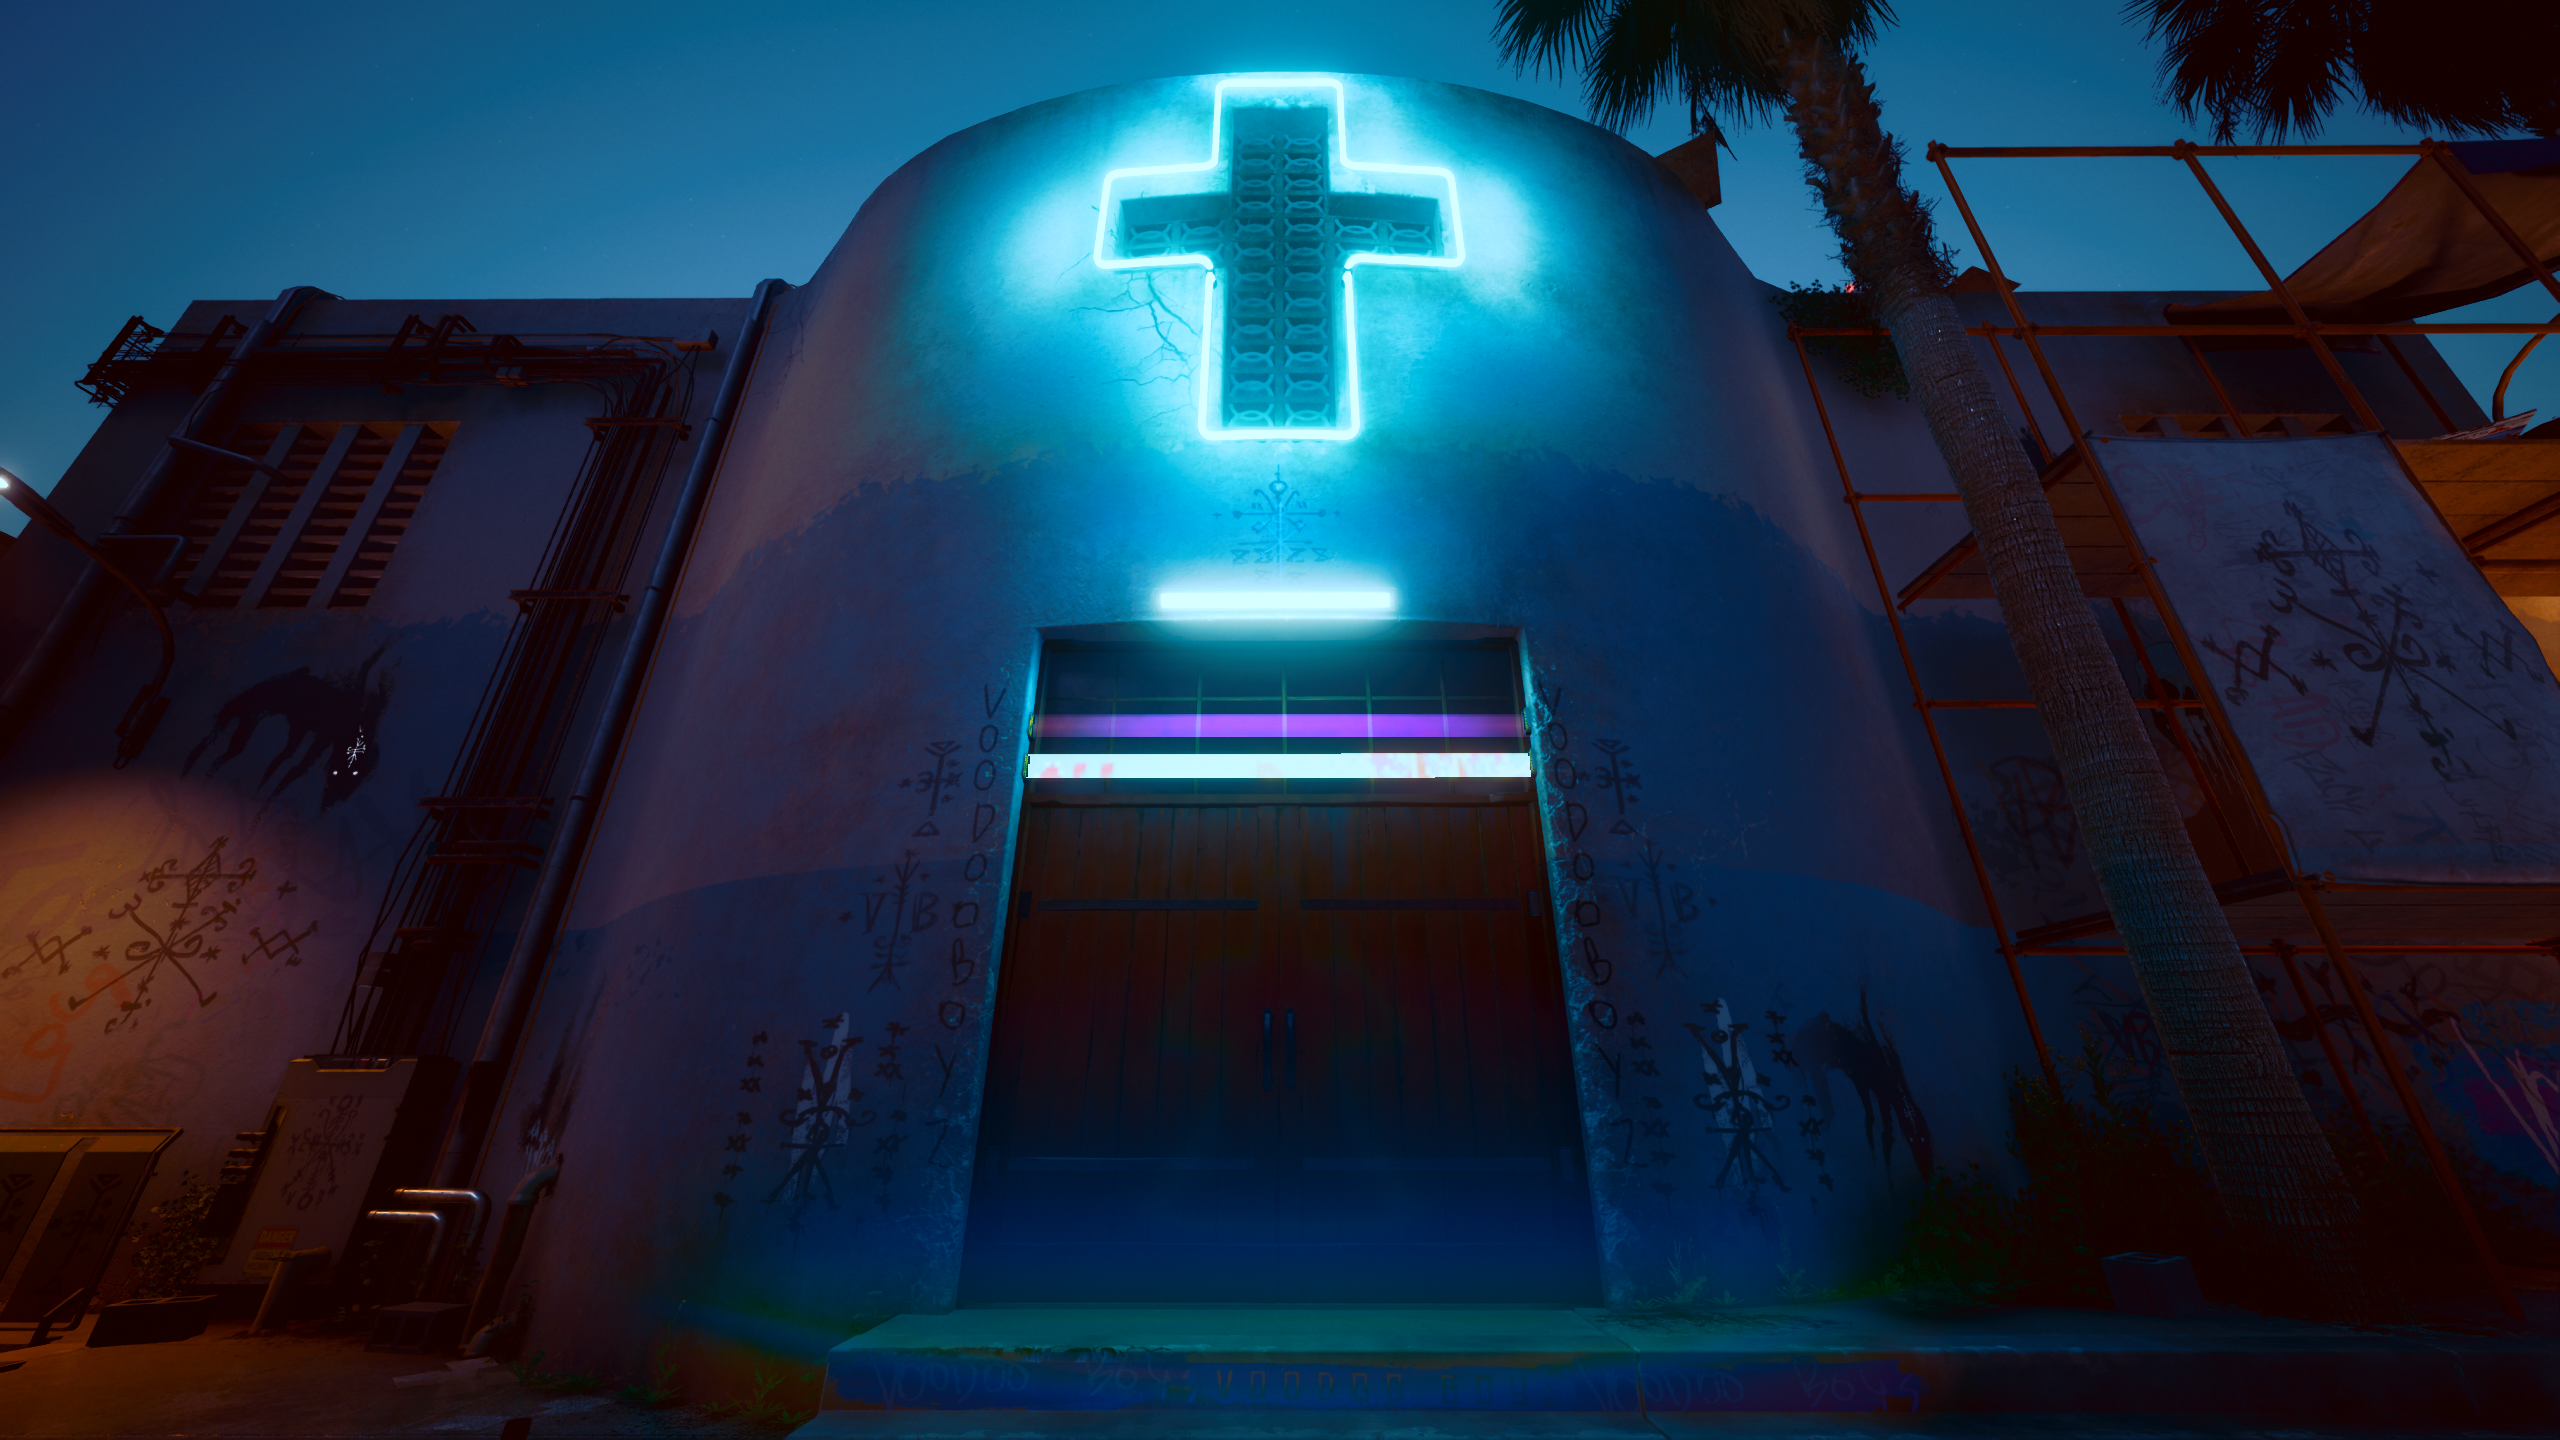 General 2560x1440 video games building cross Cyberpunk 2077 CD Projekt RED doorways video game art screen shot neon CGI door palm trees night